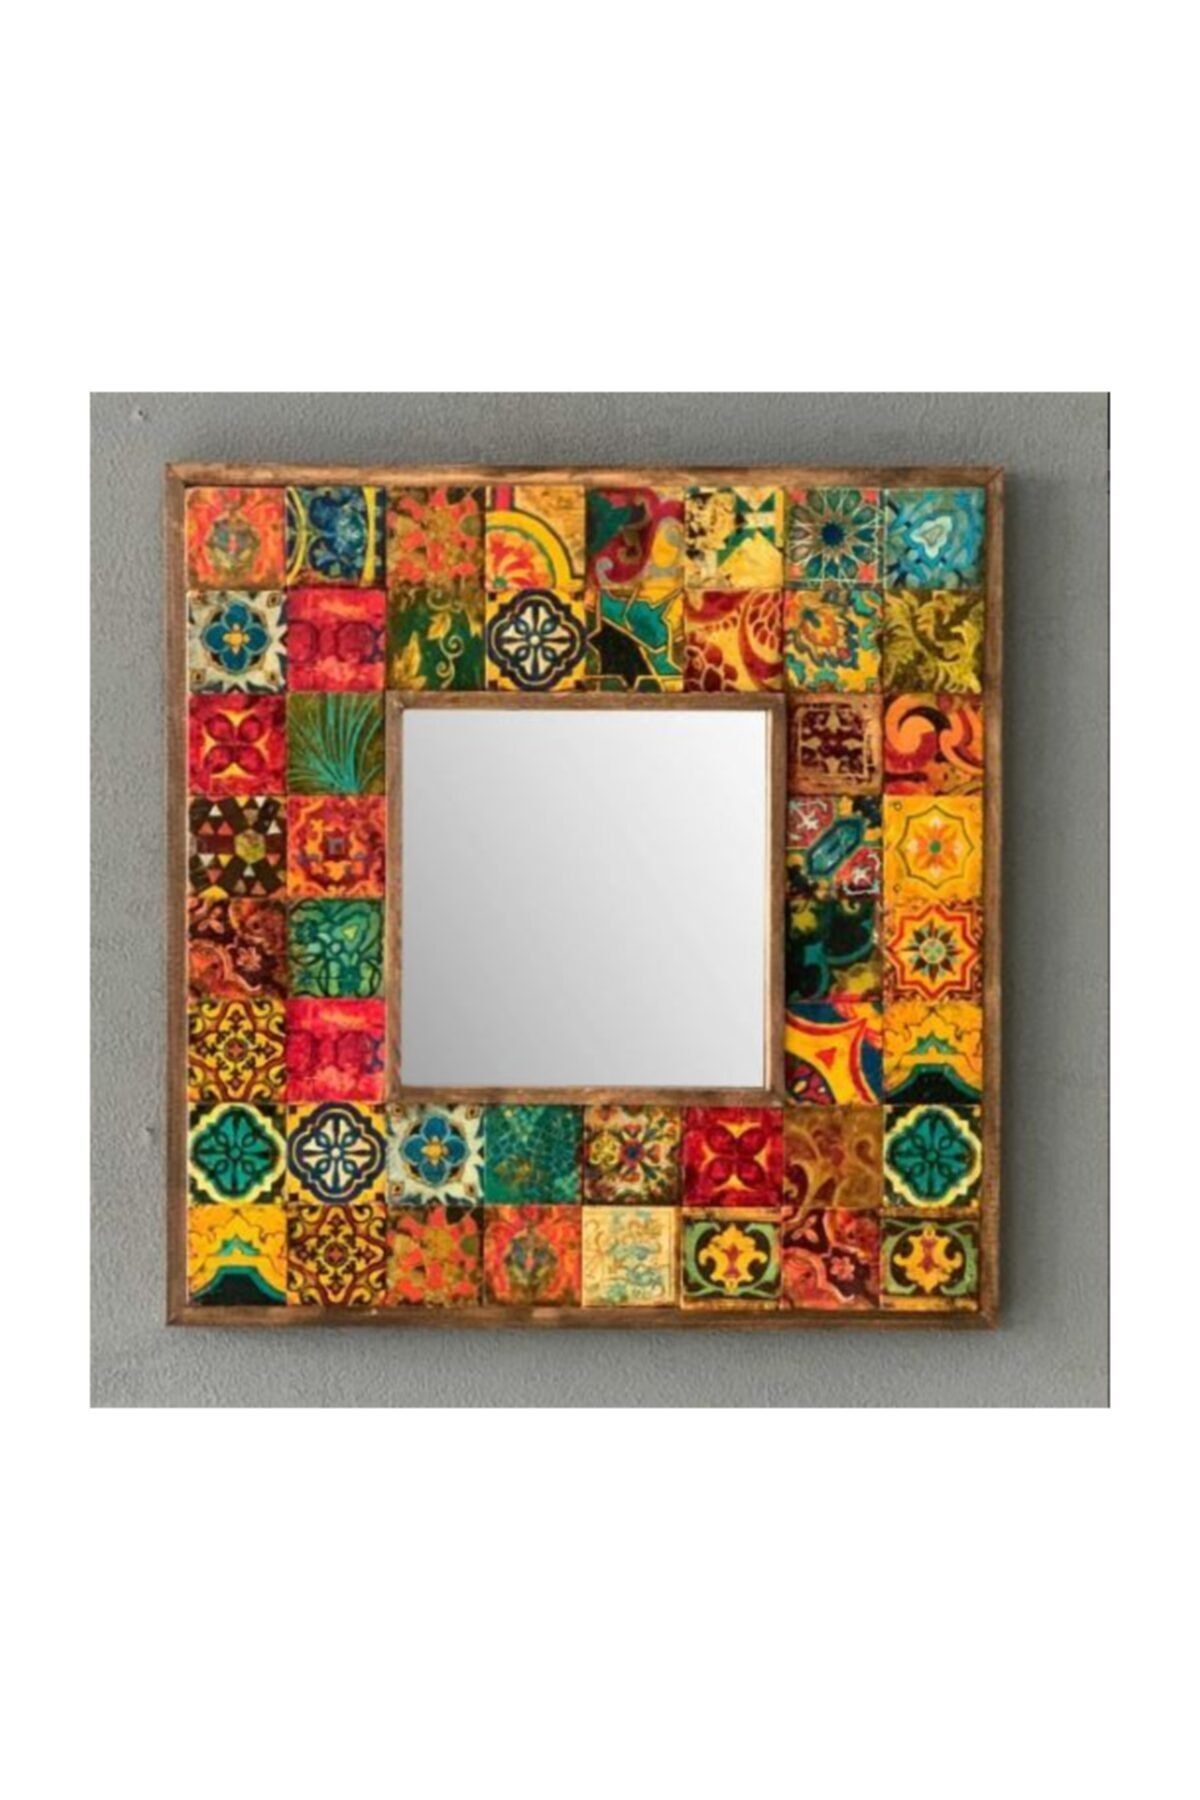 Oscar Stone Decor Ahşap Çerçeveli Taş Ayna 43 X 43 cm Morocco Desen Mozaik Ayna